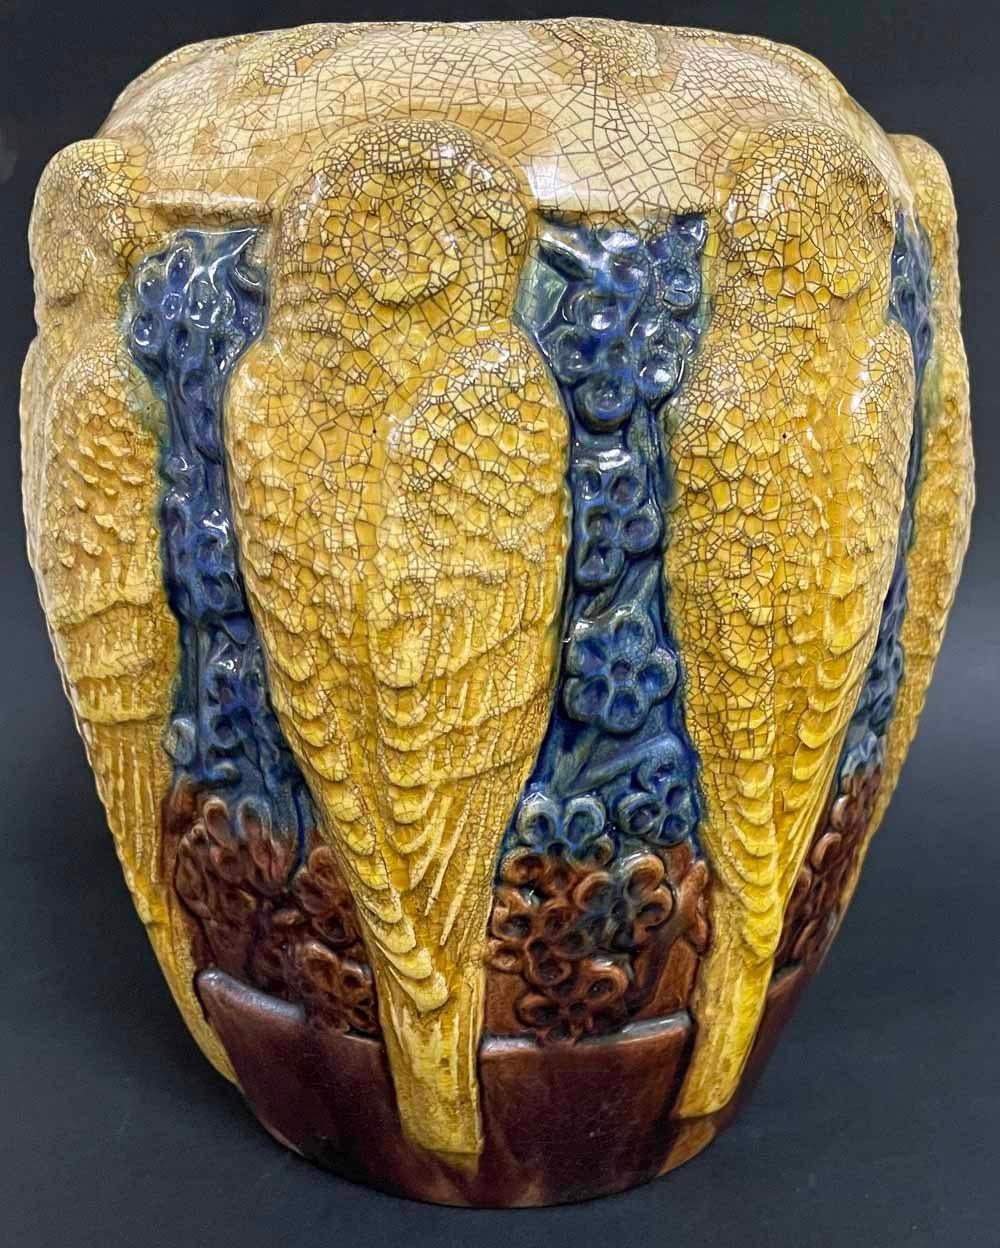 Diese große und auffällige Vase - das erste Exemplar, das wir gesehen haben - zeigt eine friesartige Reihe von goldenen Sittichen oder kleinen Papageien, die vor einem tiefblauen Grund aus Blumenformen angeordnet sind.  Das Relief ist hoch und